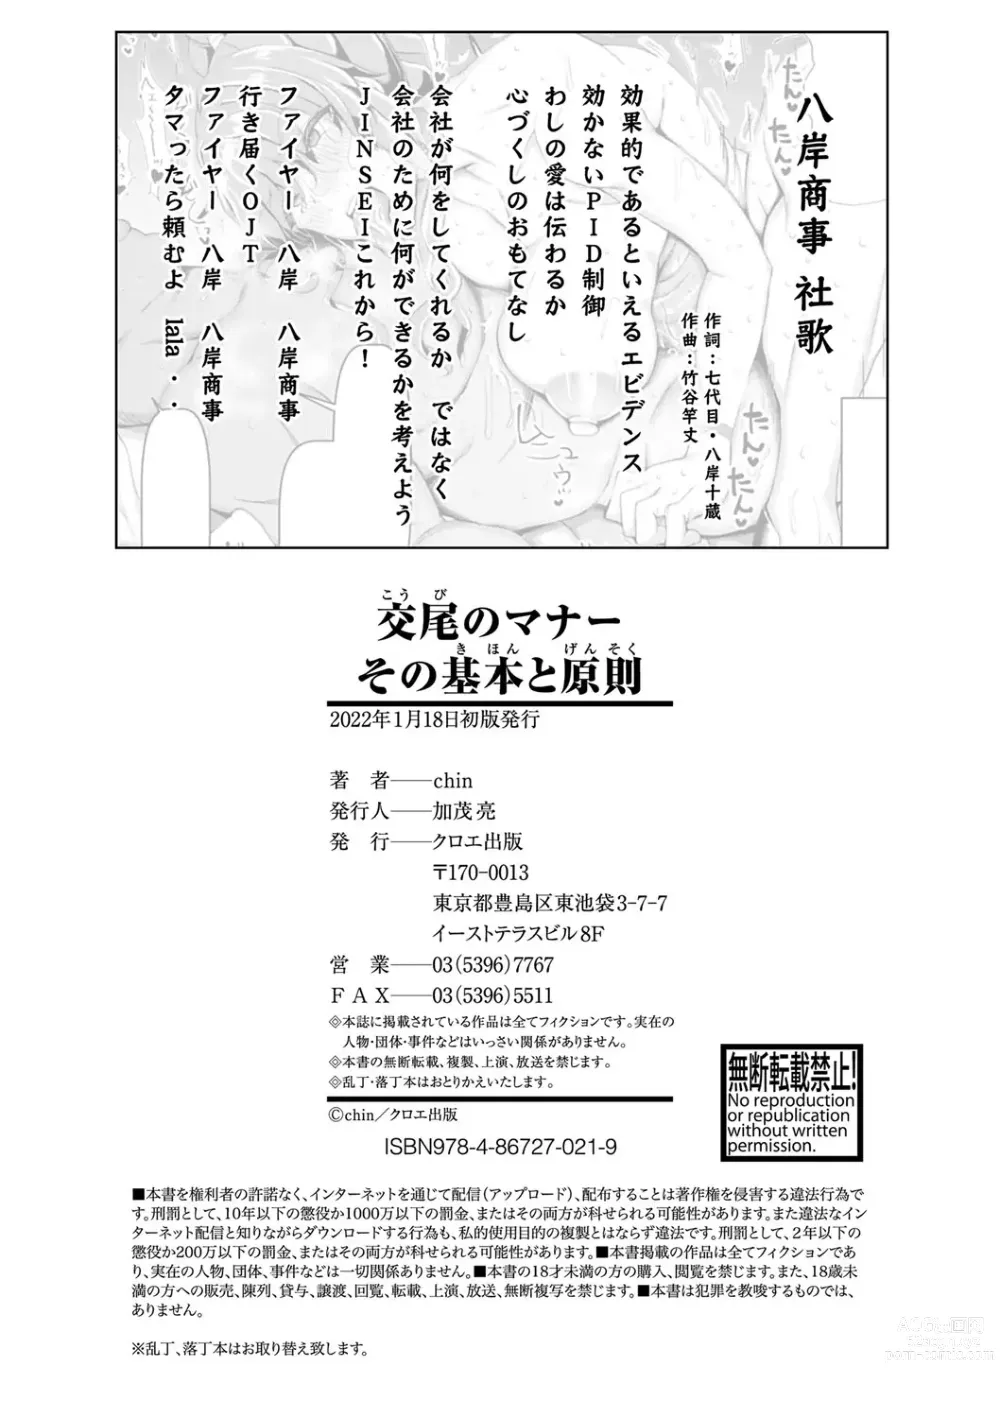 Page 203 of manga Koubi no Manner sono Kihon to Gensoku